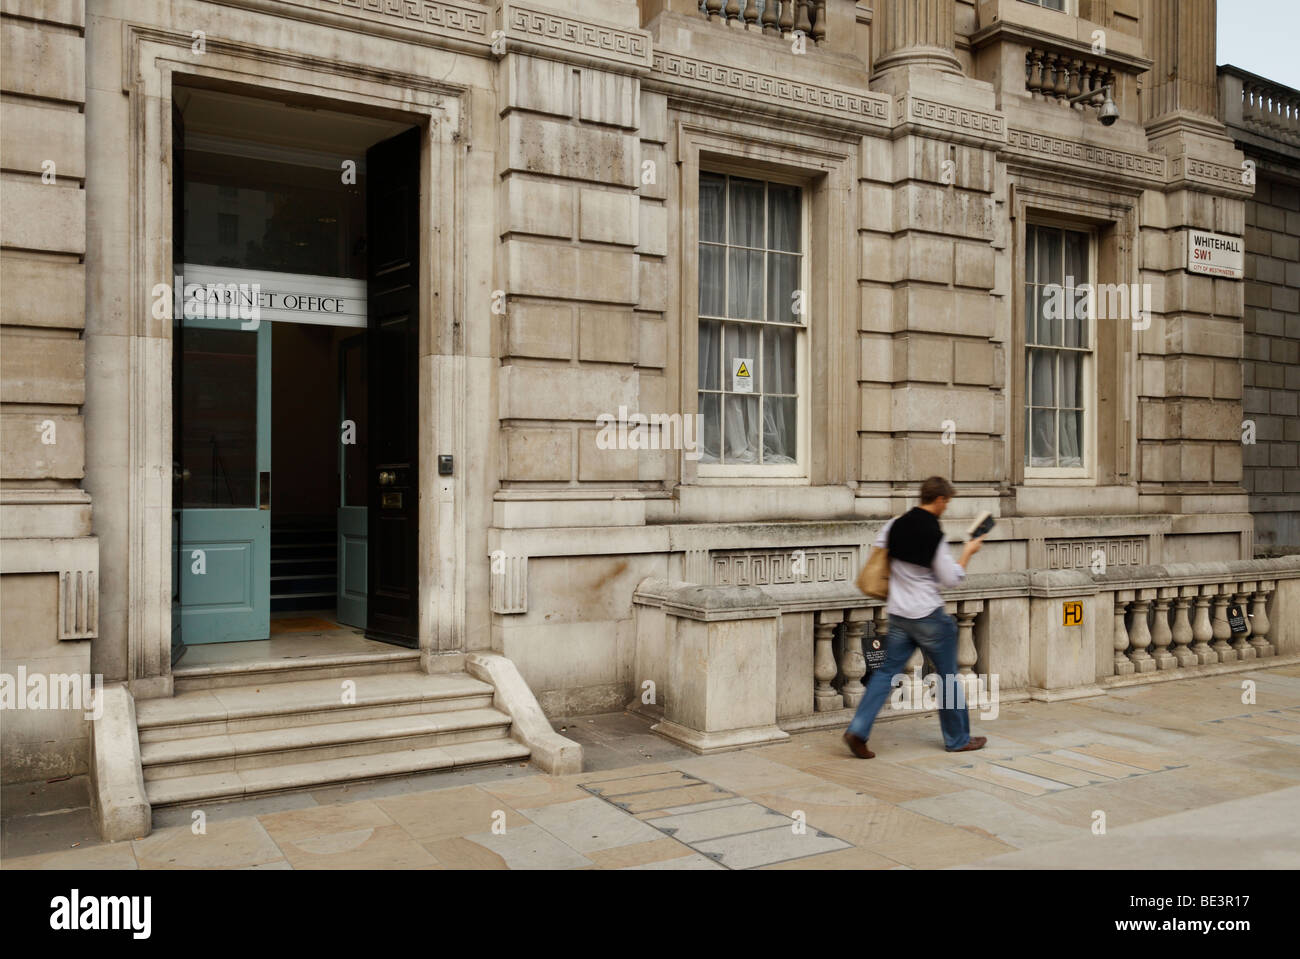 Eintritt in das Cabinet Office, Whitehall, London, England, Vereinigtes Königreich. Stockfoto